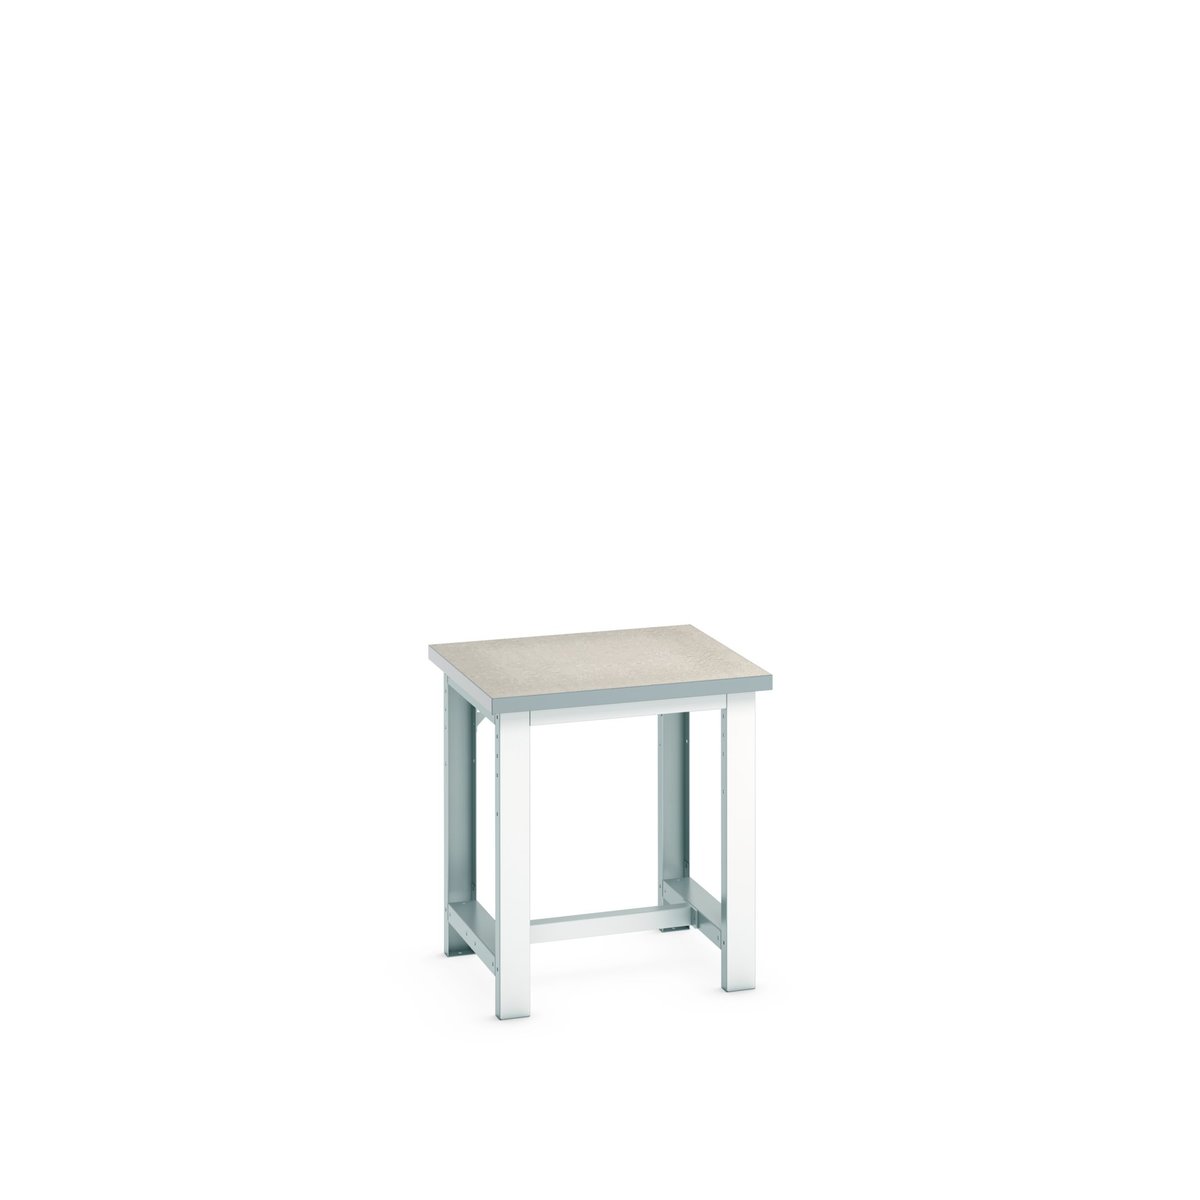 41003012.16V - cubio framework bench (lino)